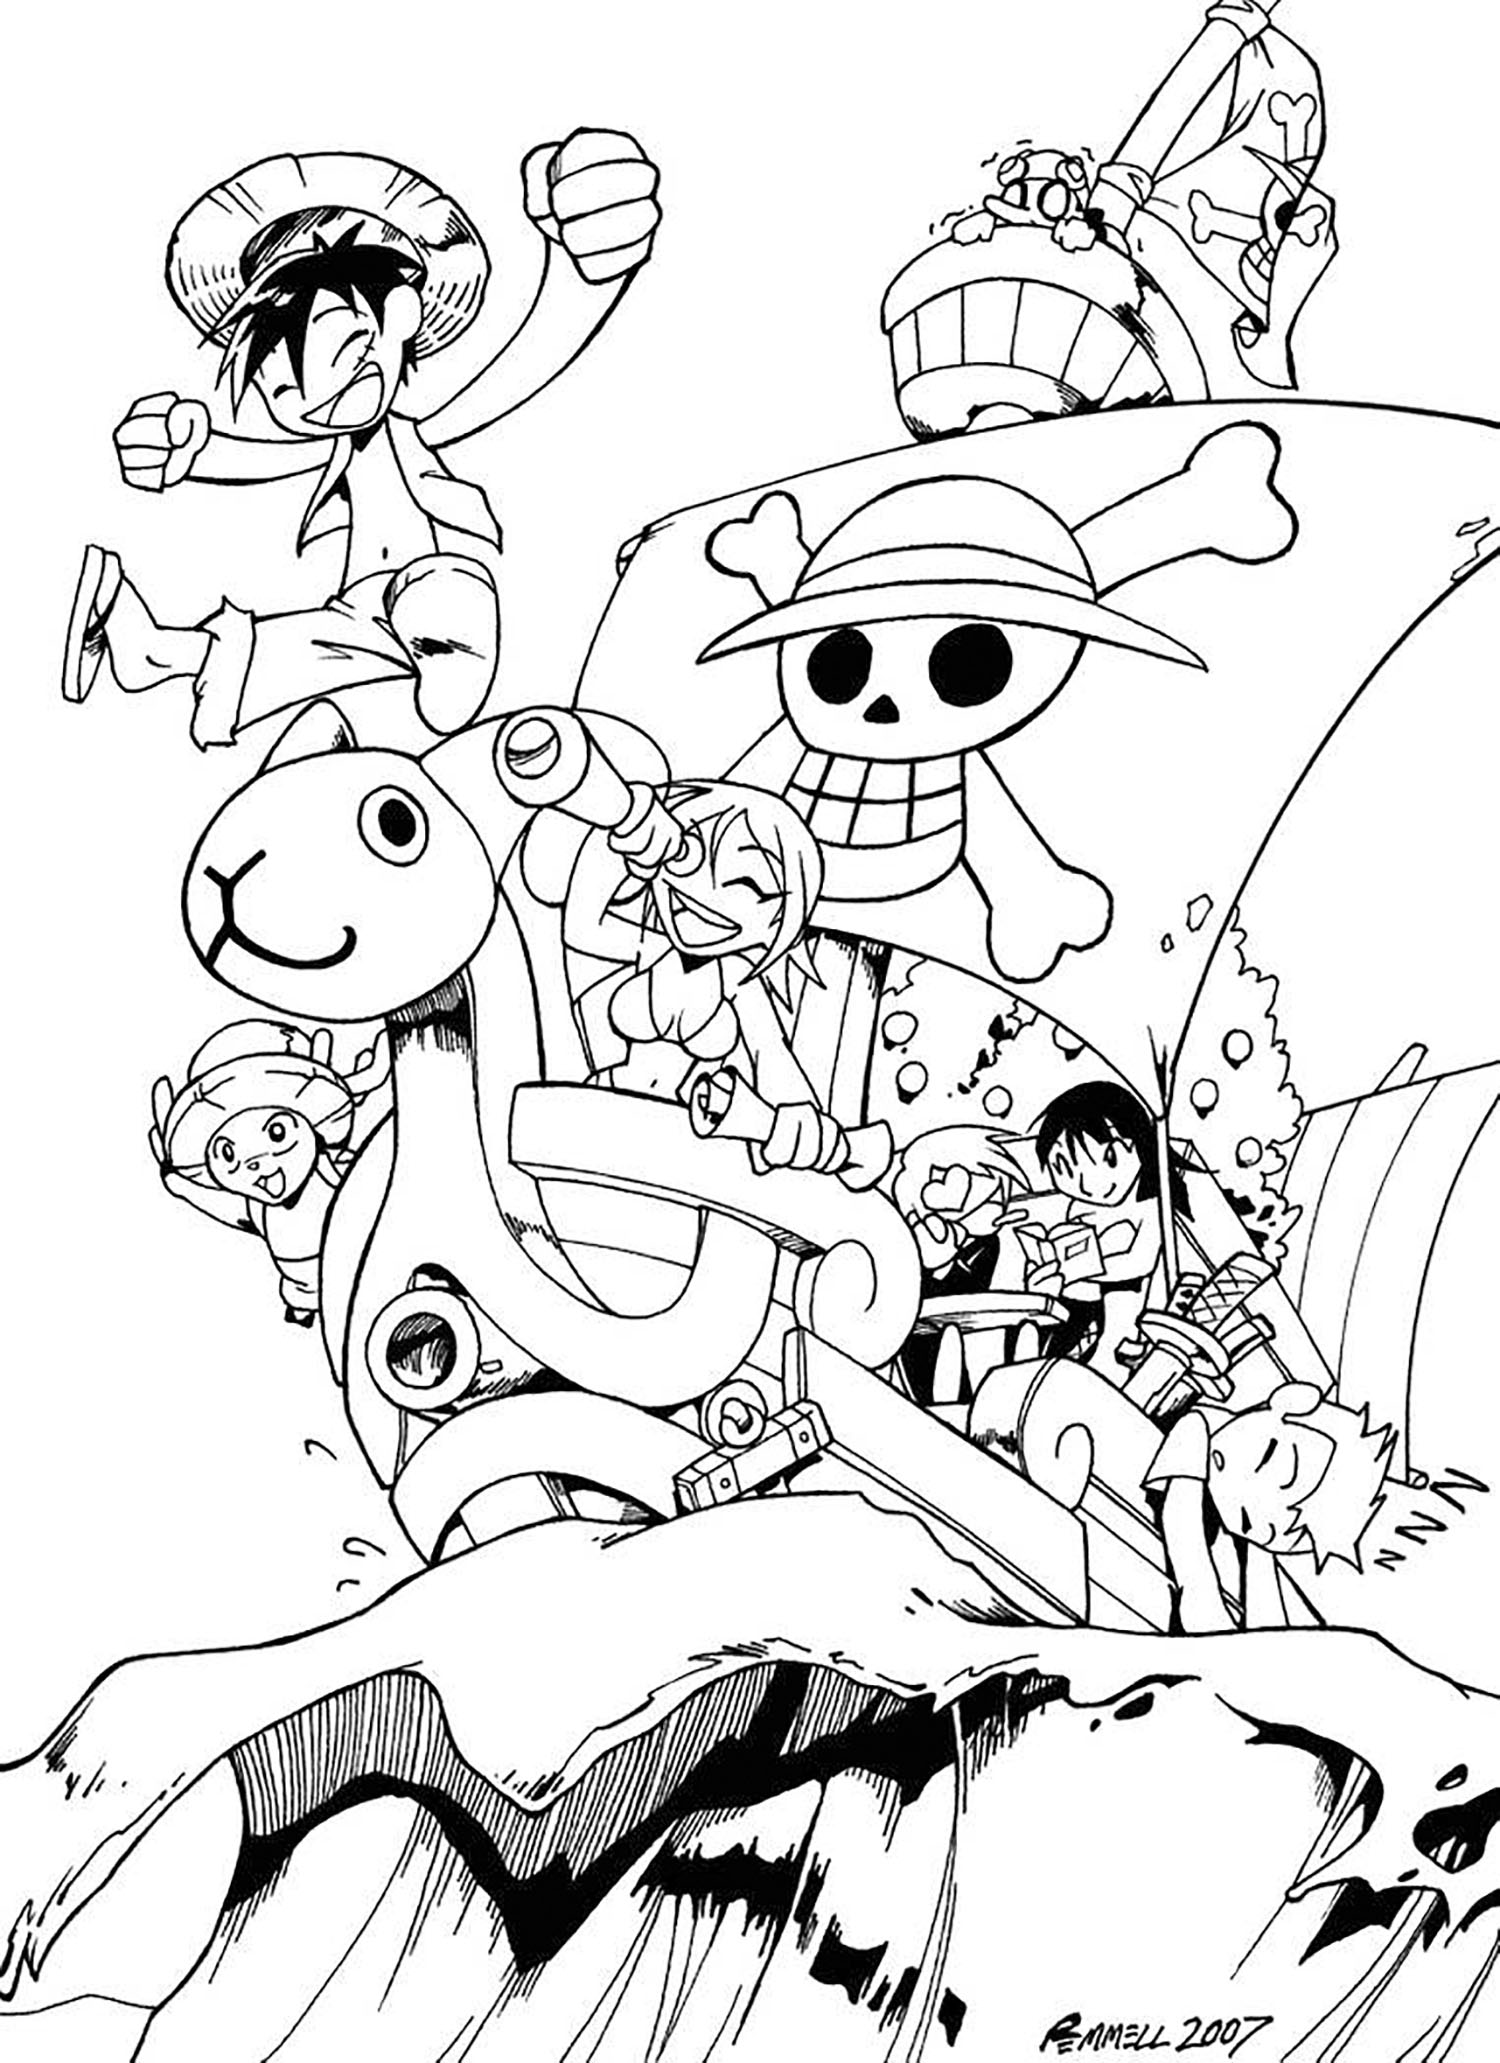 Dibujo para colorear de One Piece, fácil para los niños